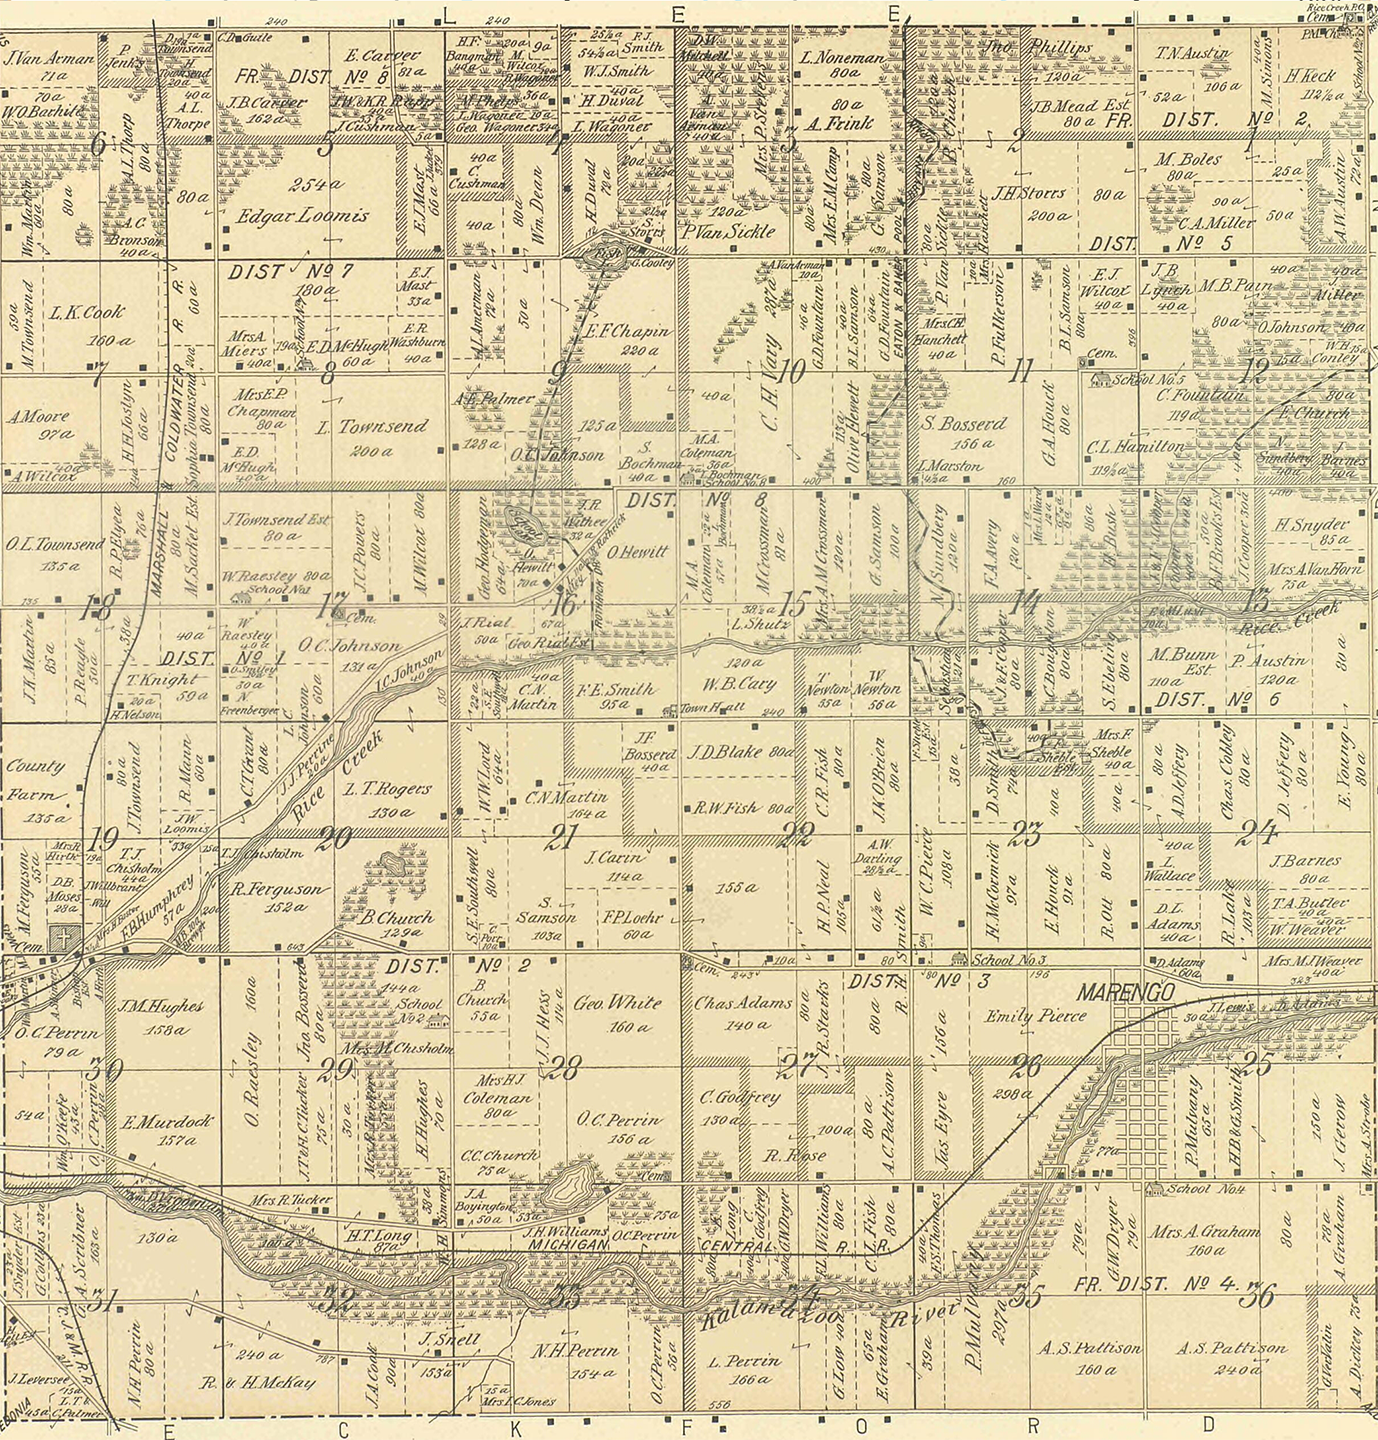 1894 Marengo Township, Michigan landownership map